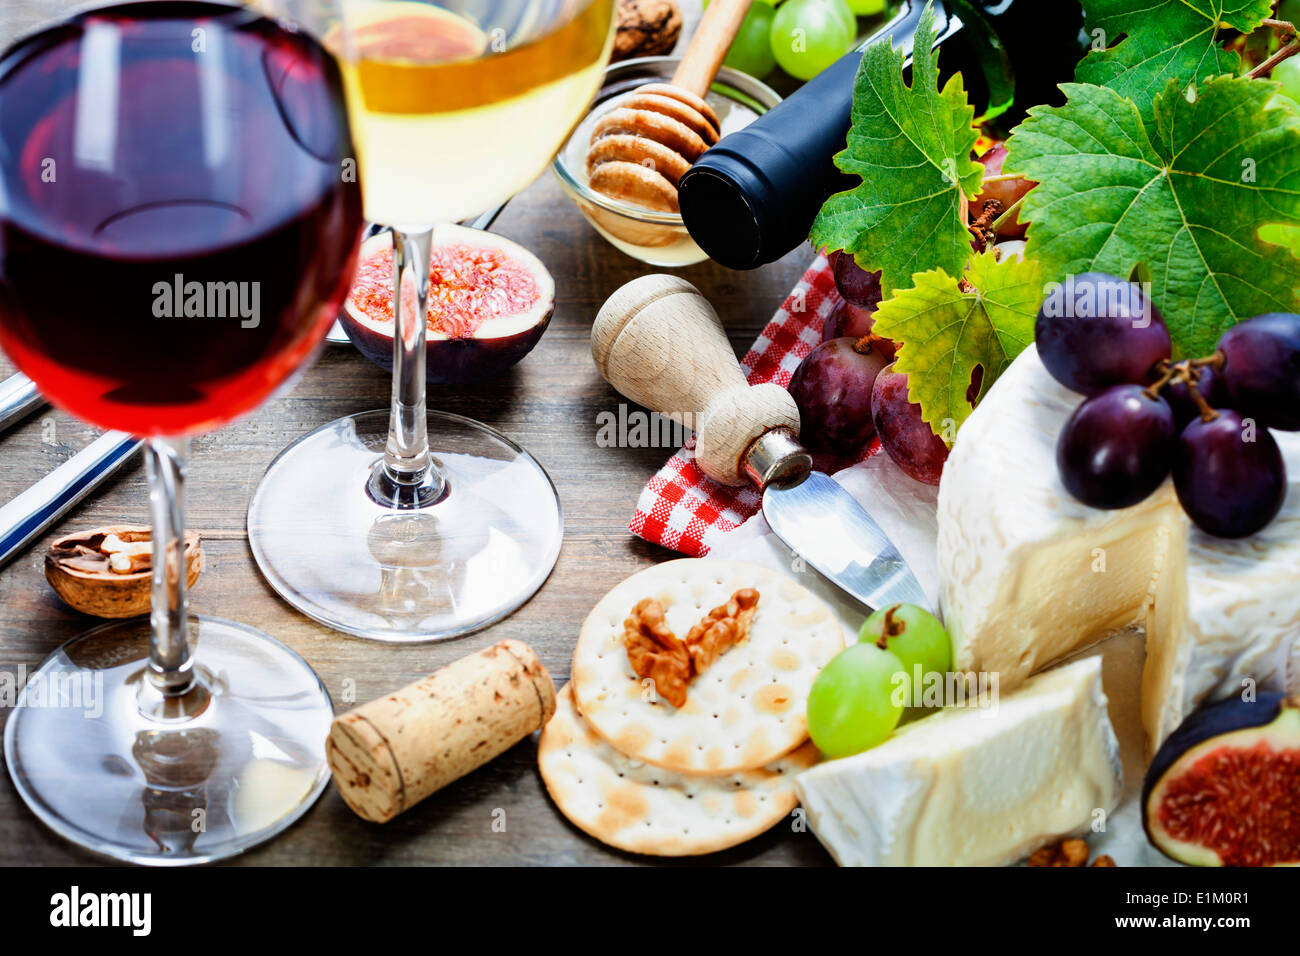 La uva, el vino y el queso sobre fondo de madera Foto de stock